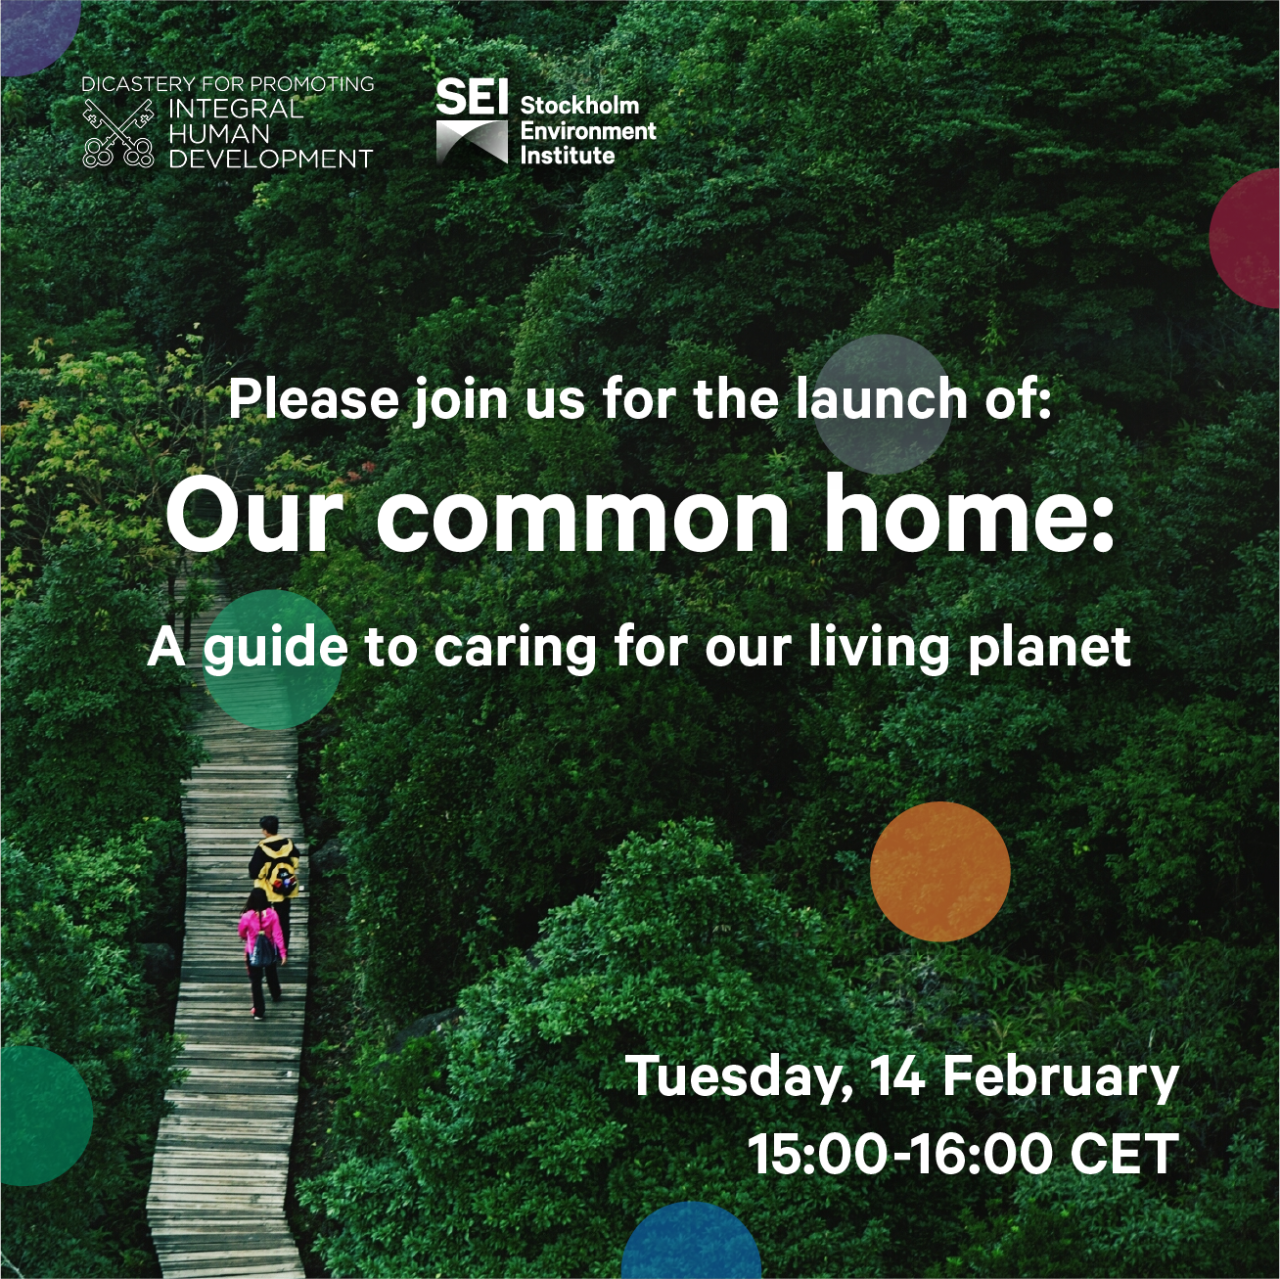 Notre maison commune : un guide pour prendre soin de notre planète